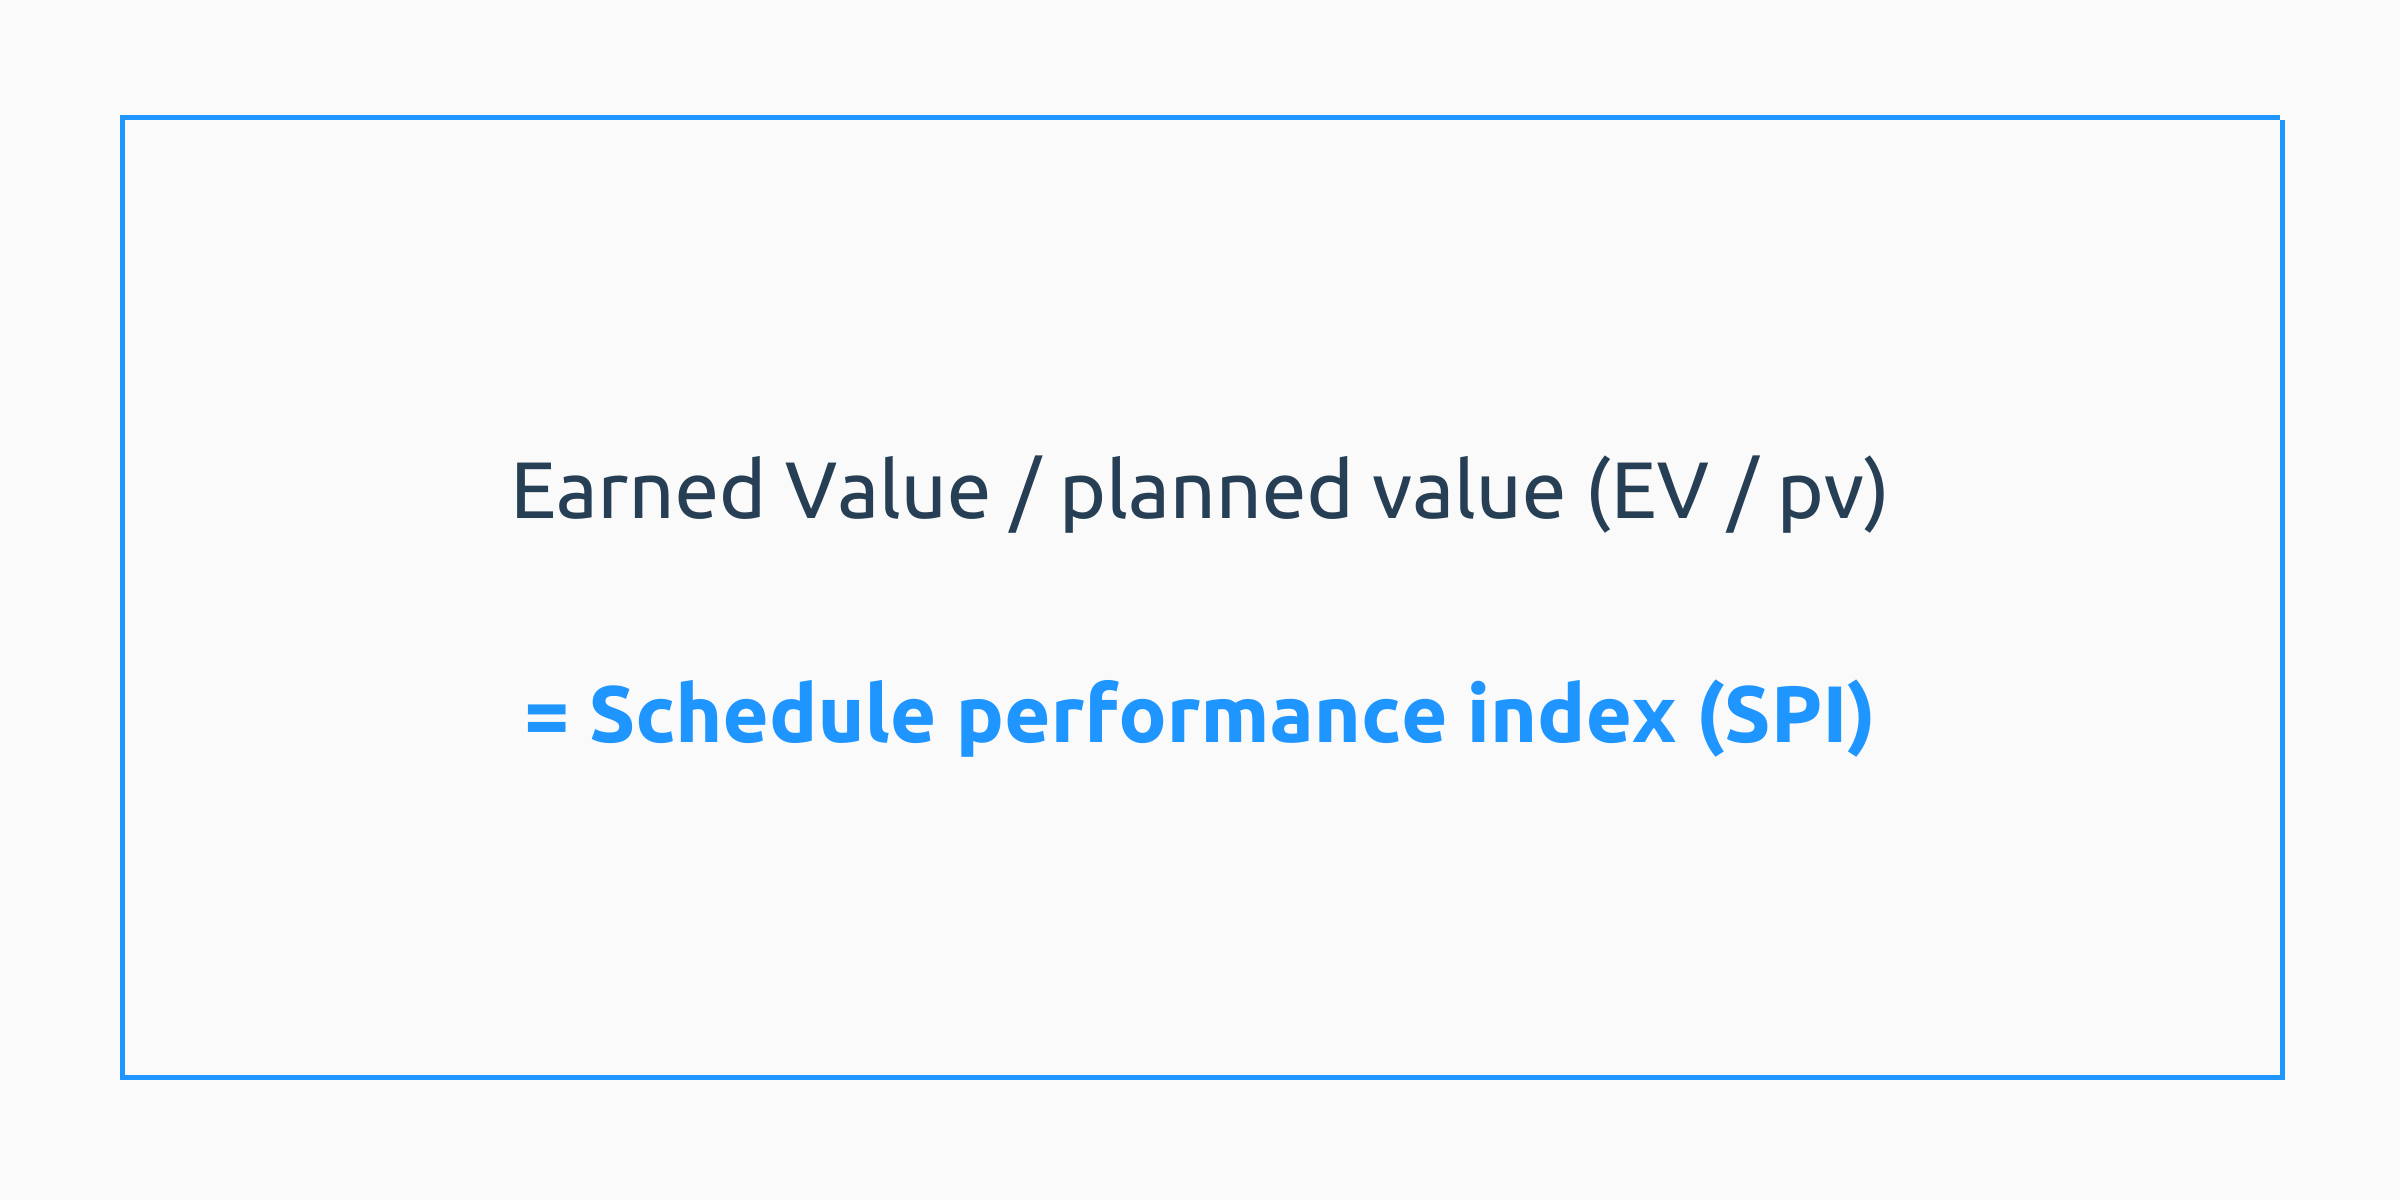 Earned value/planned value (Ev/pv) = schedule performance index (SPI)